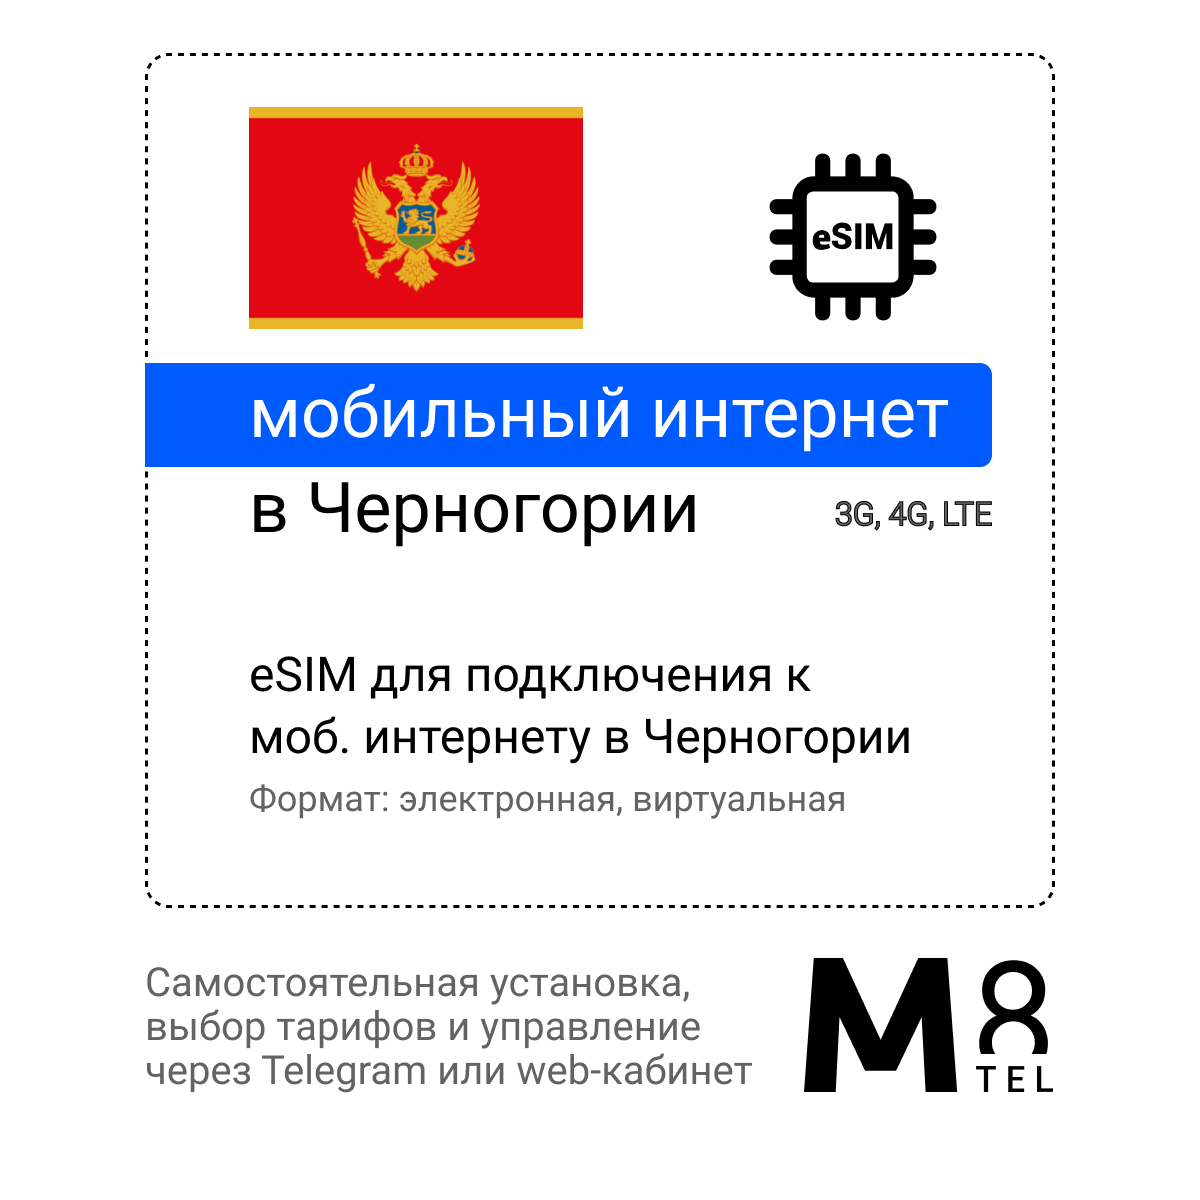 Туристическая электронная SIM-карта - eSIM для Черногории от М8 (виртуальная)